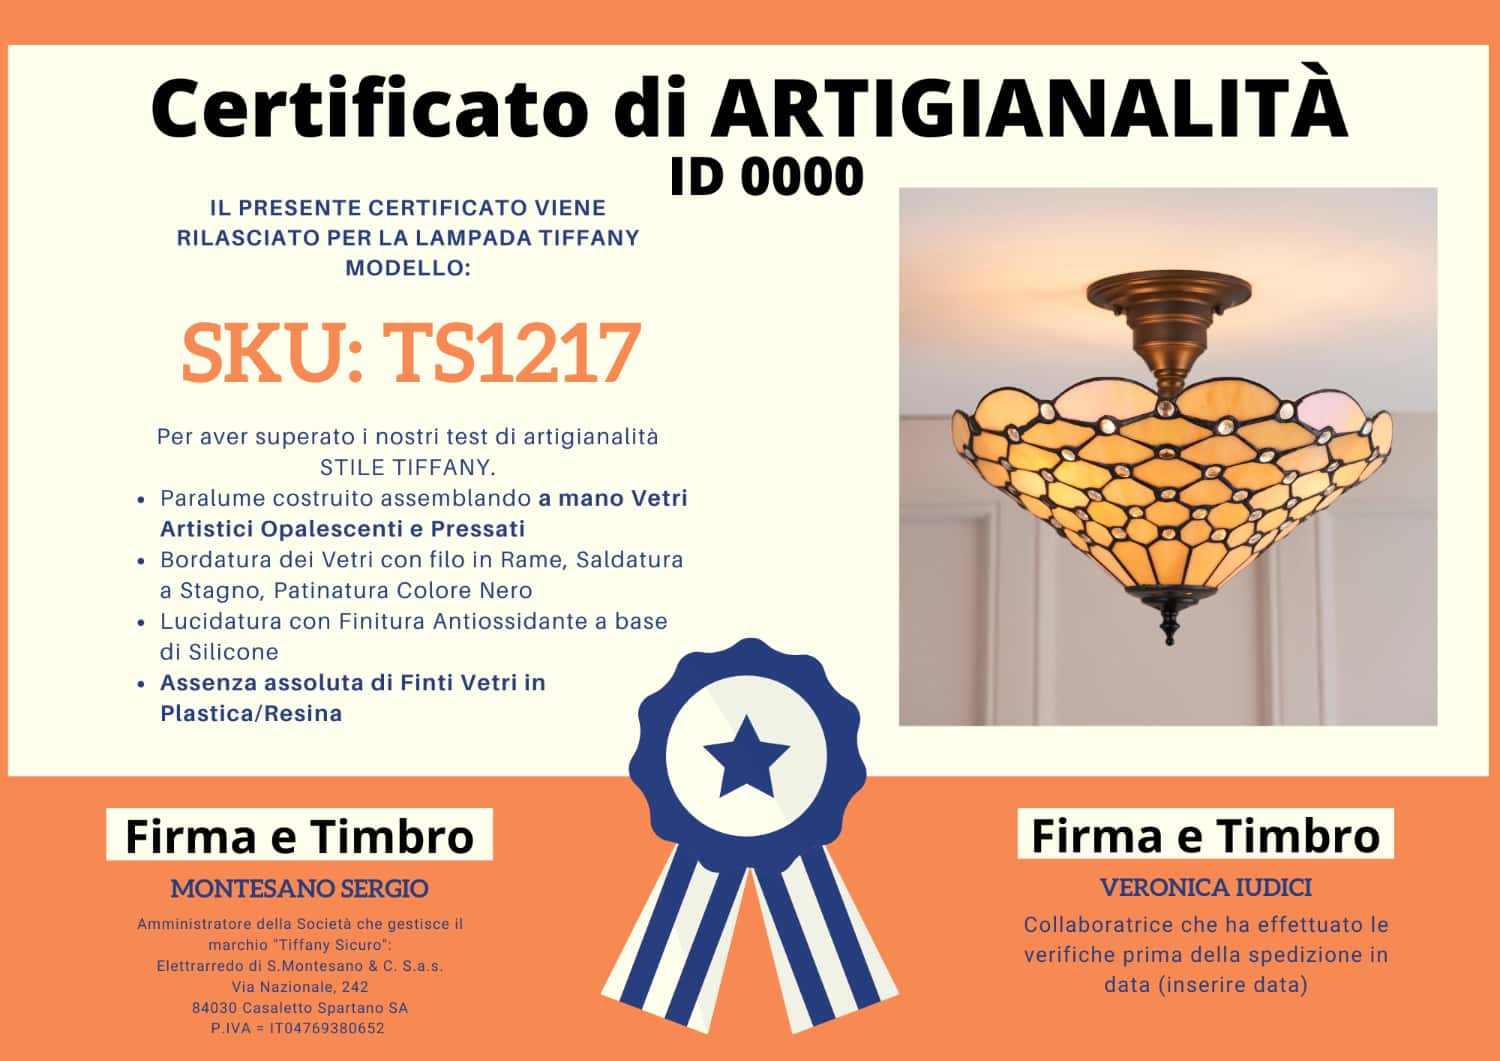 Lampadario Stile Tiffany Invertito, certificato